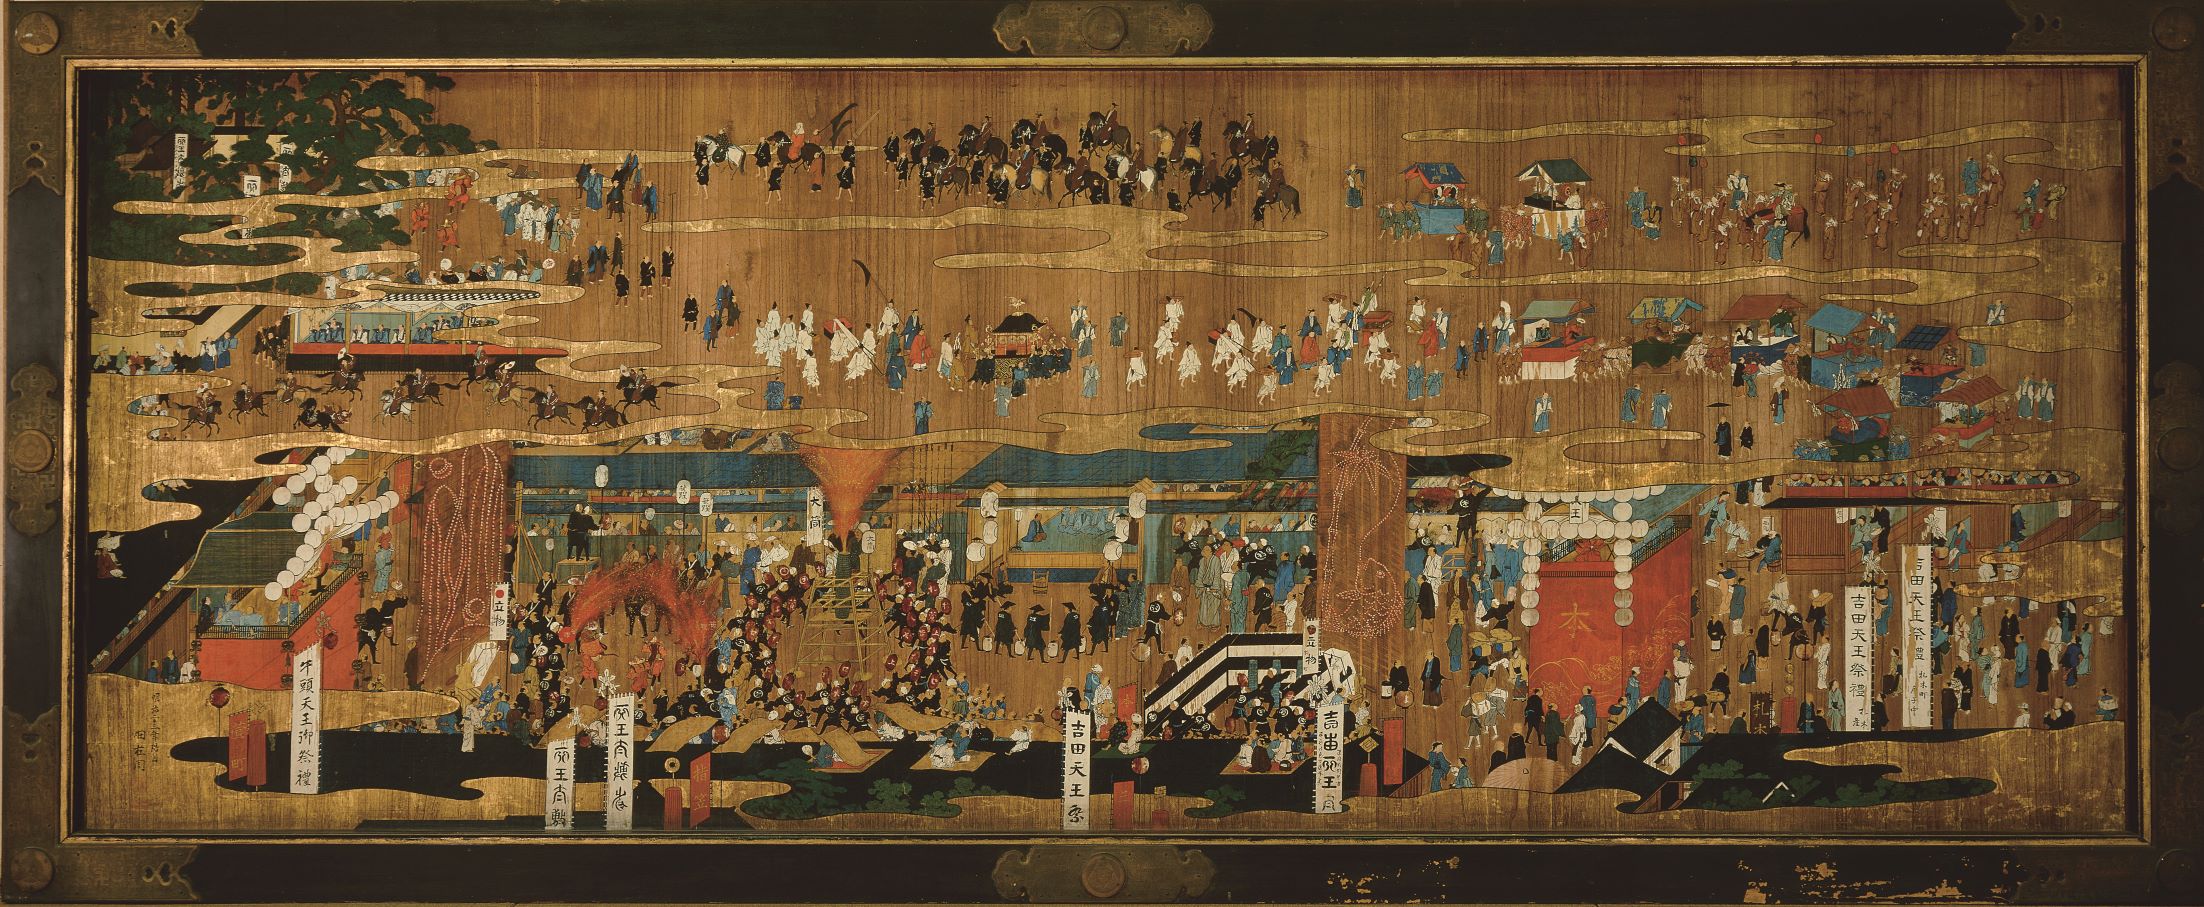 吉田神社旧式祭礼図絵馬